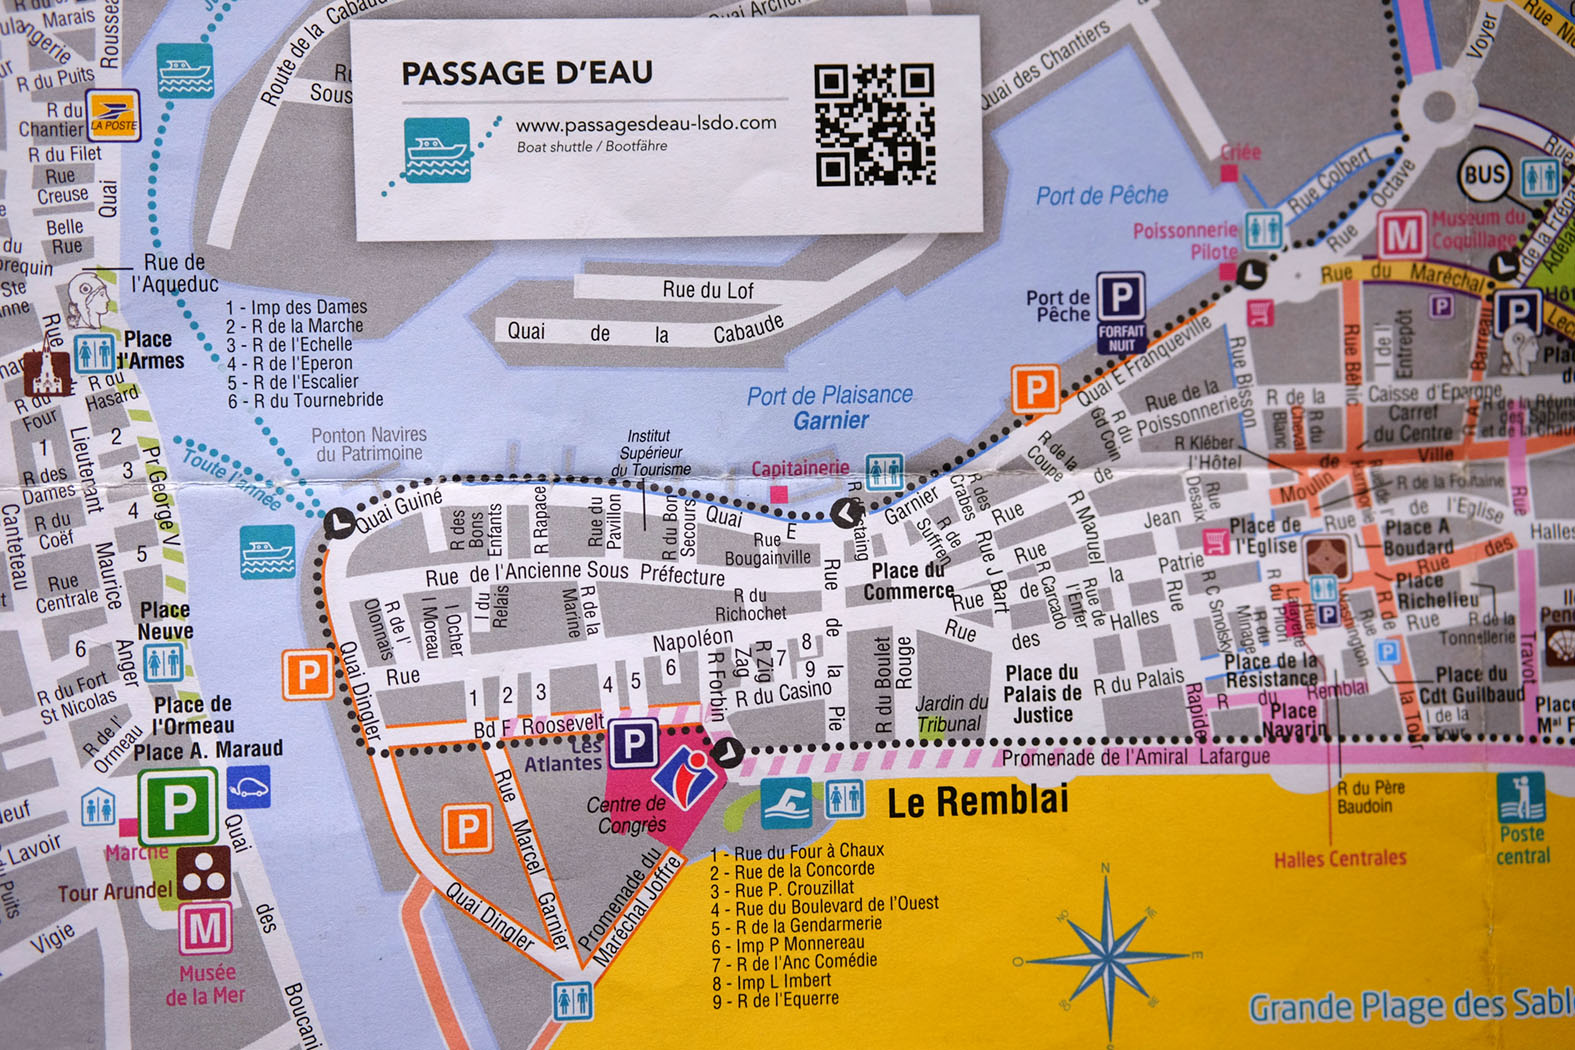 im Süden der Strand, im Norden der Hafen, im Osten La Chaume - eigentlich ganz einfach / Auszug aus dem Stadtplan, Quelle: Office de Tourisme